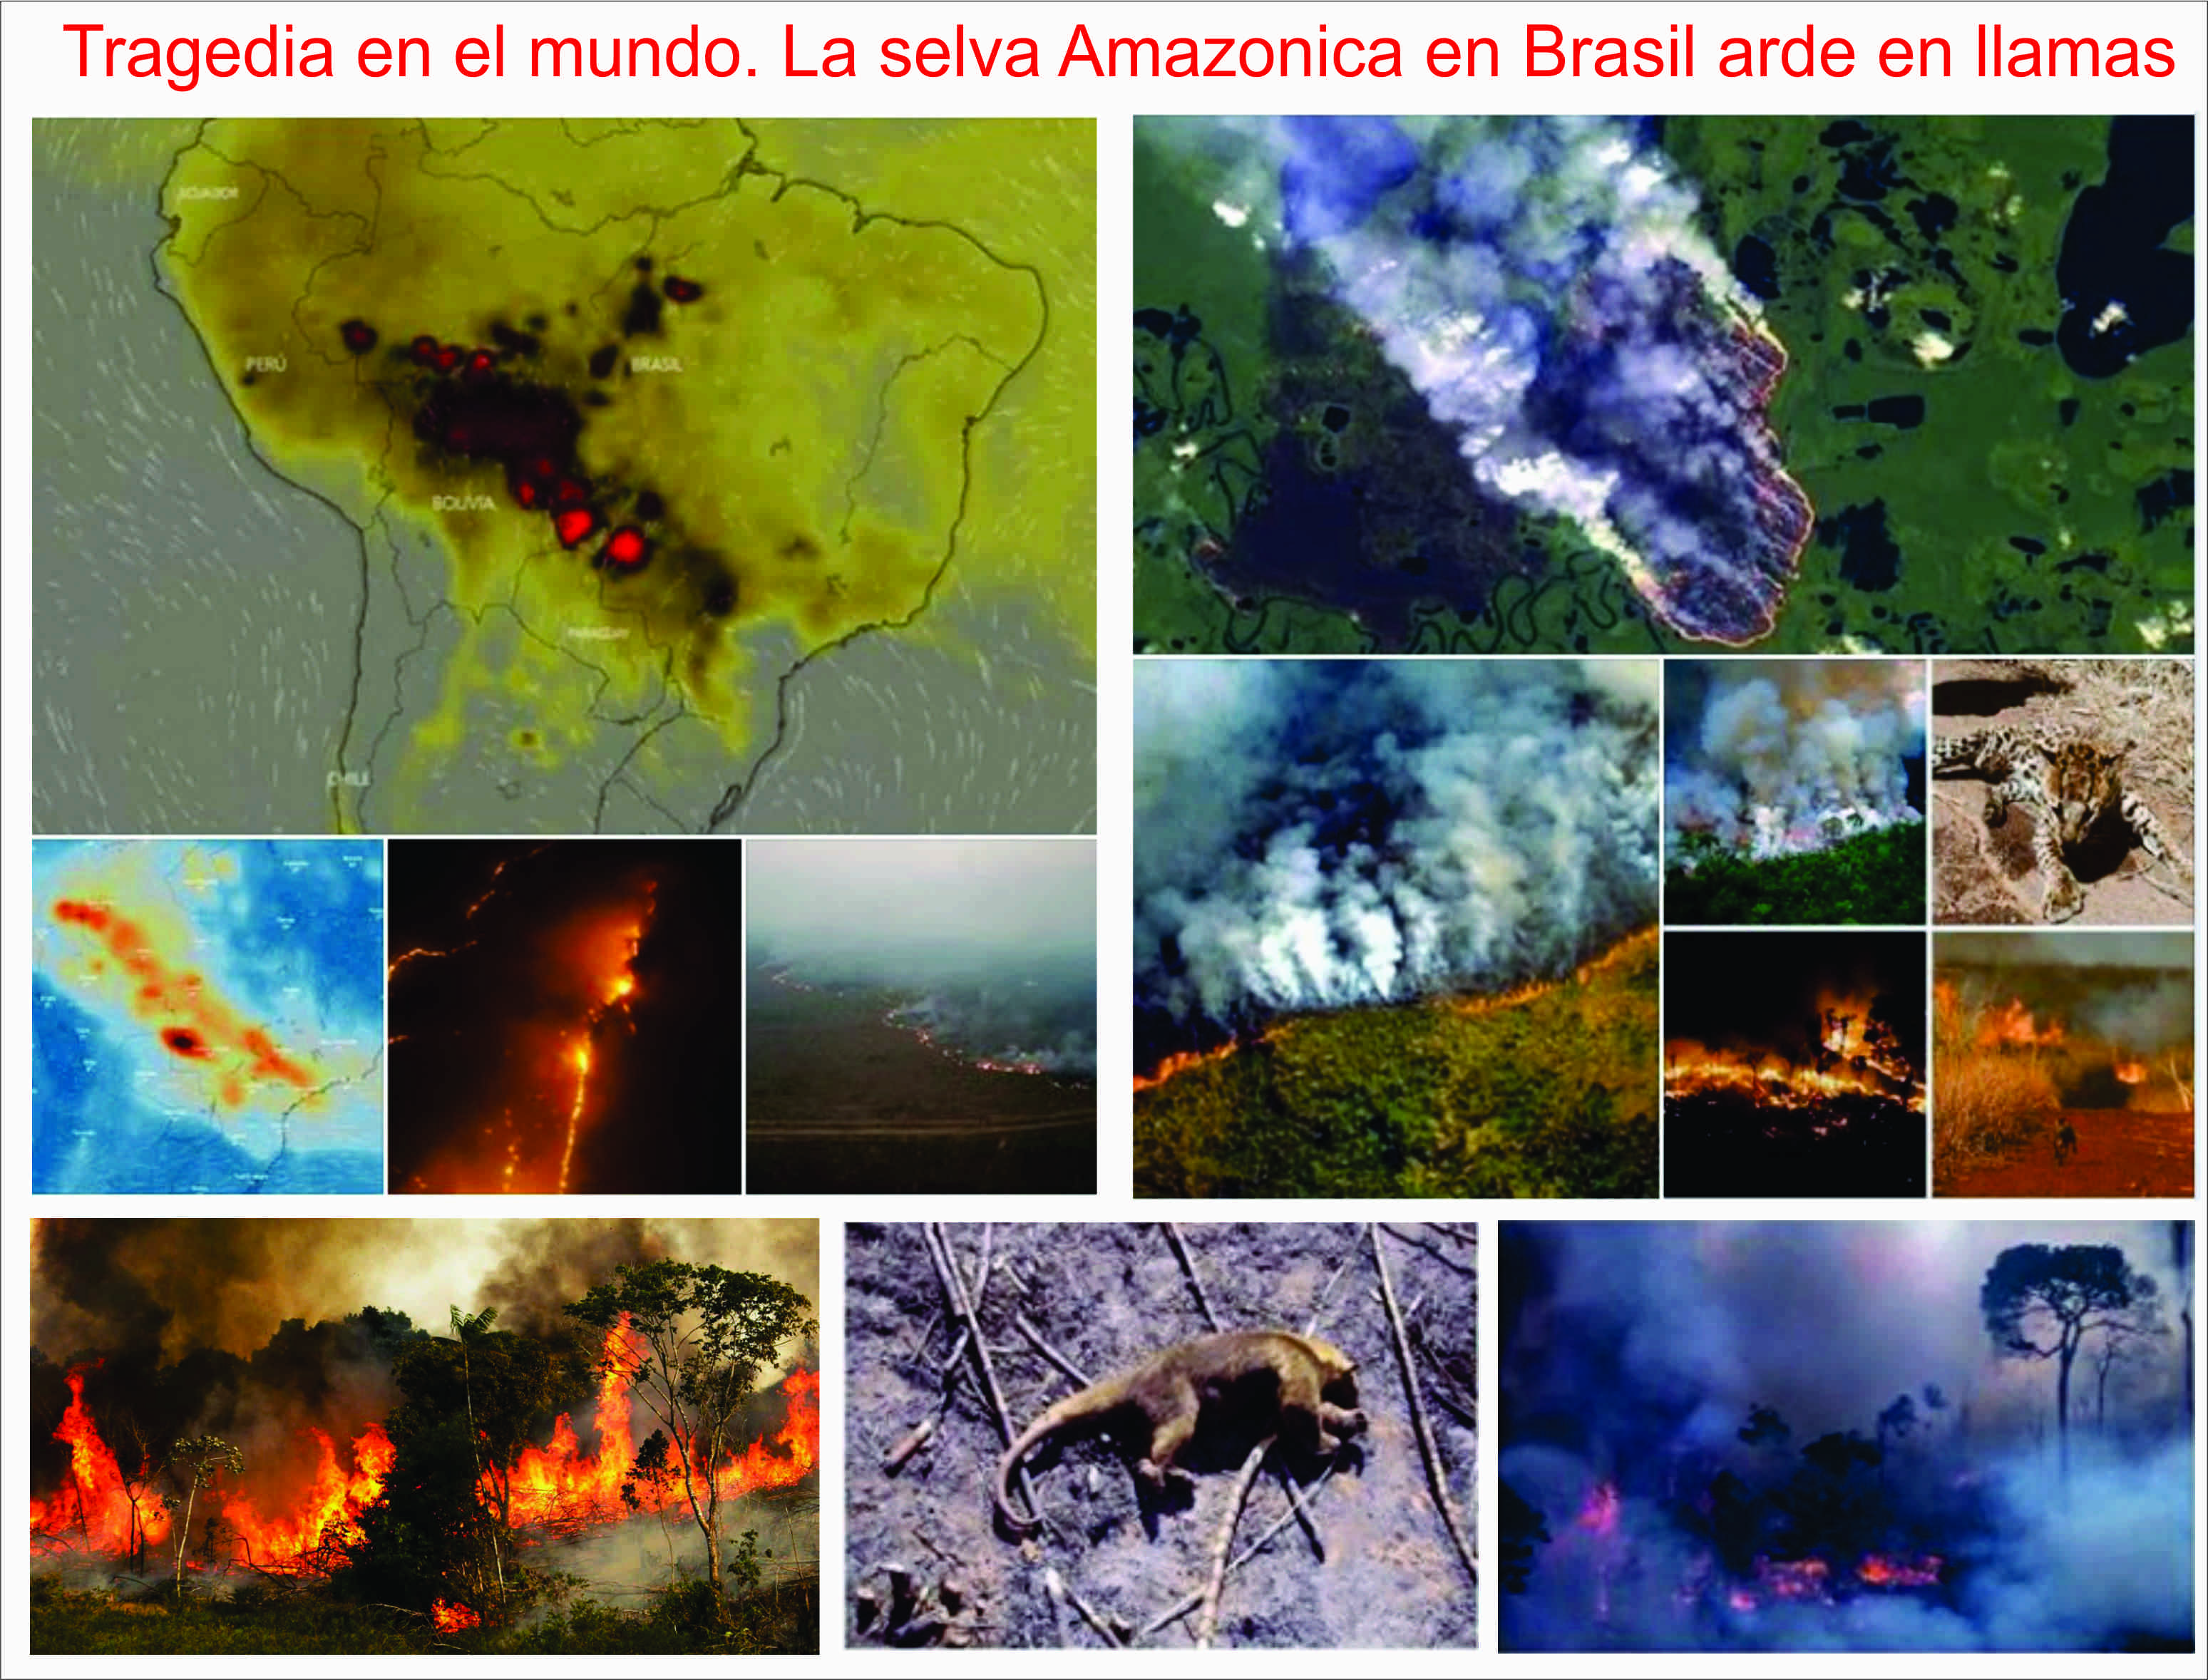  La selva Amazónica, devorada por un incendio forestal de 16 días